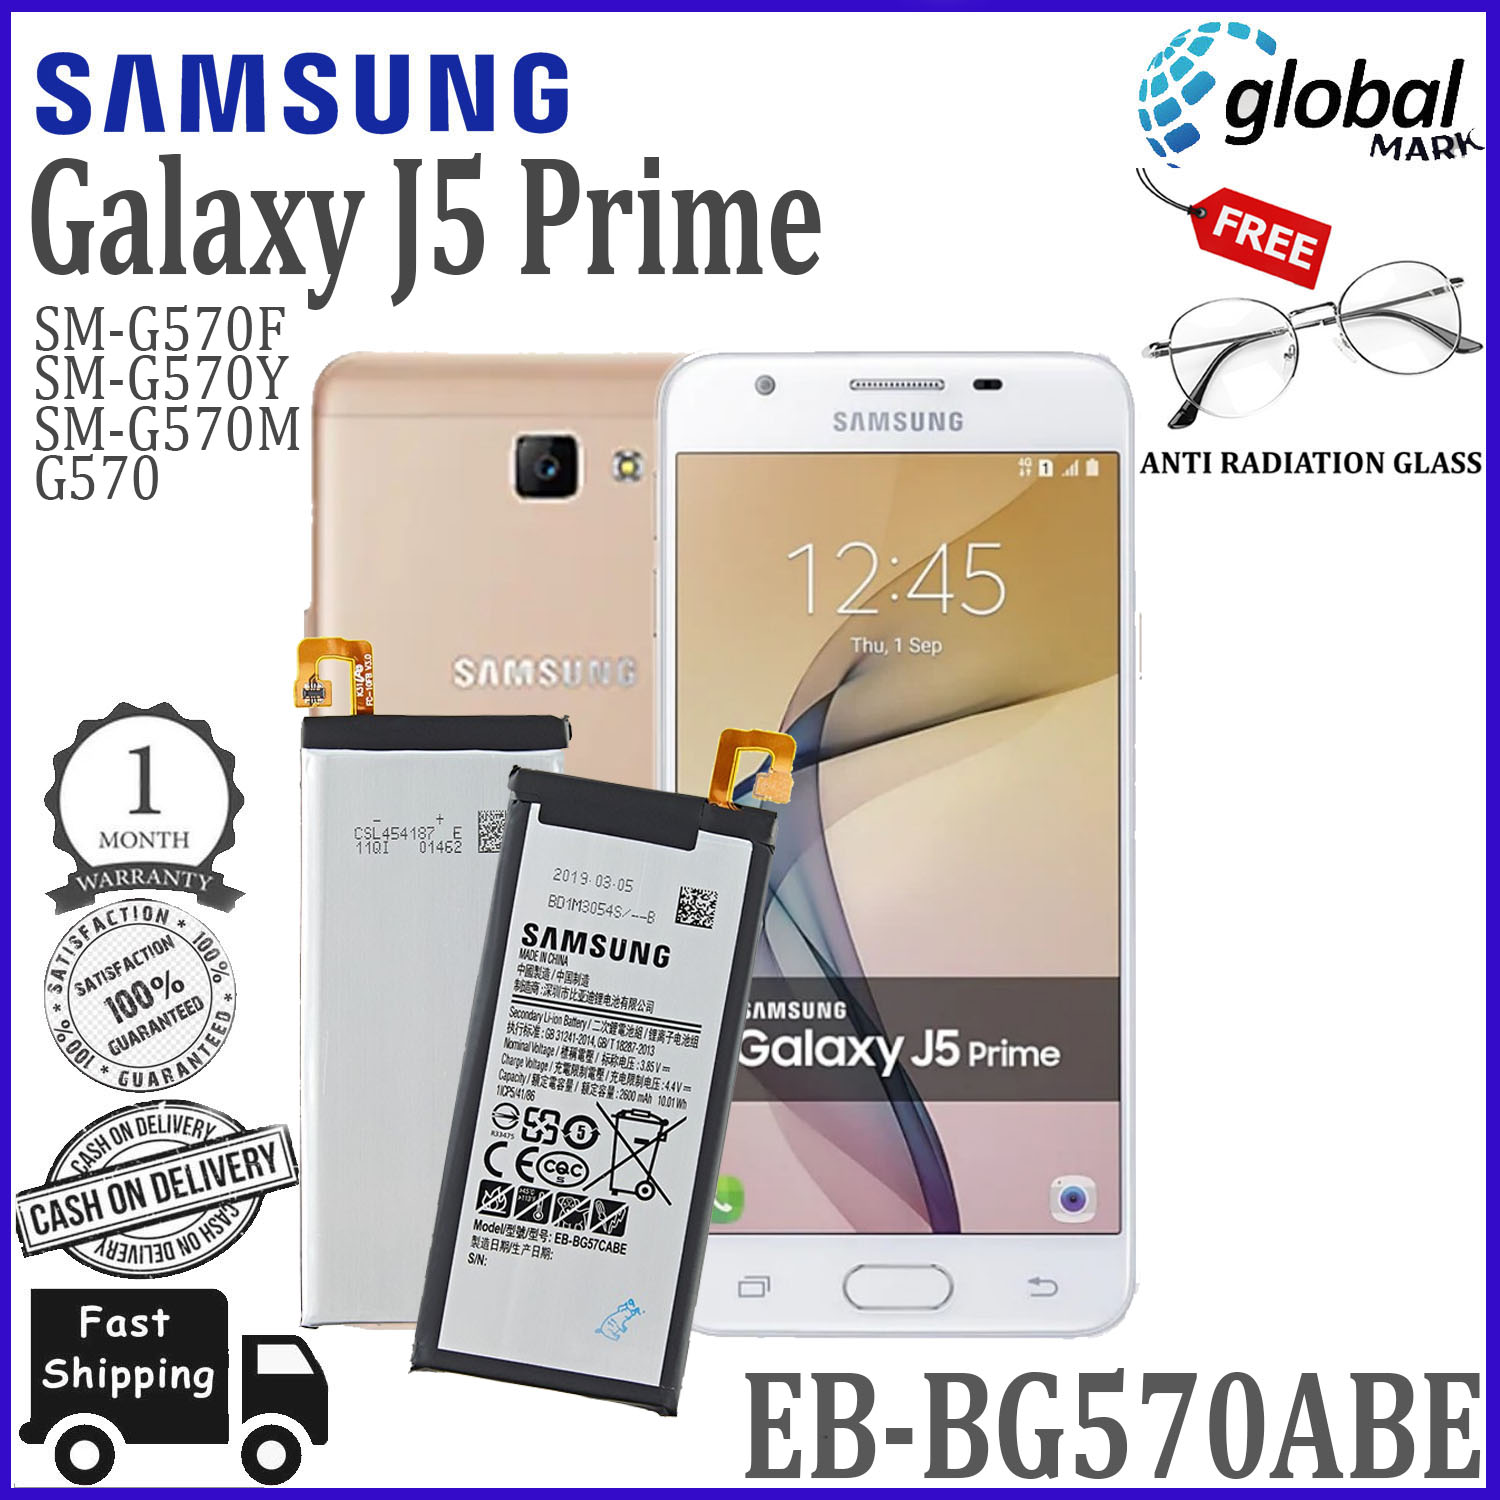 Samsung GALAXY J5 prime SM-G570Y